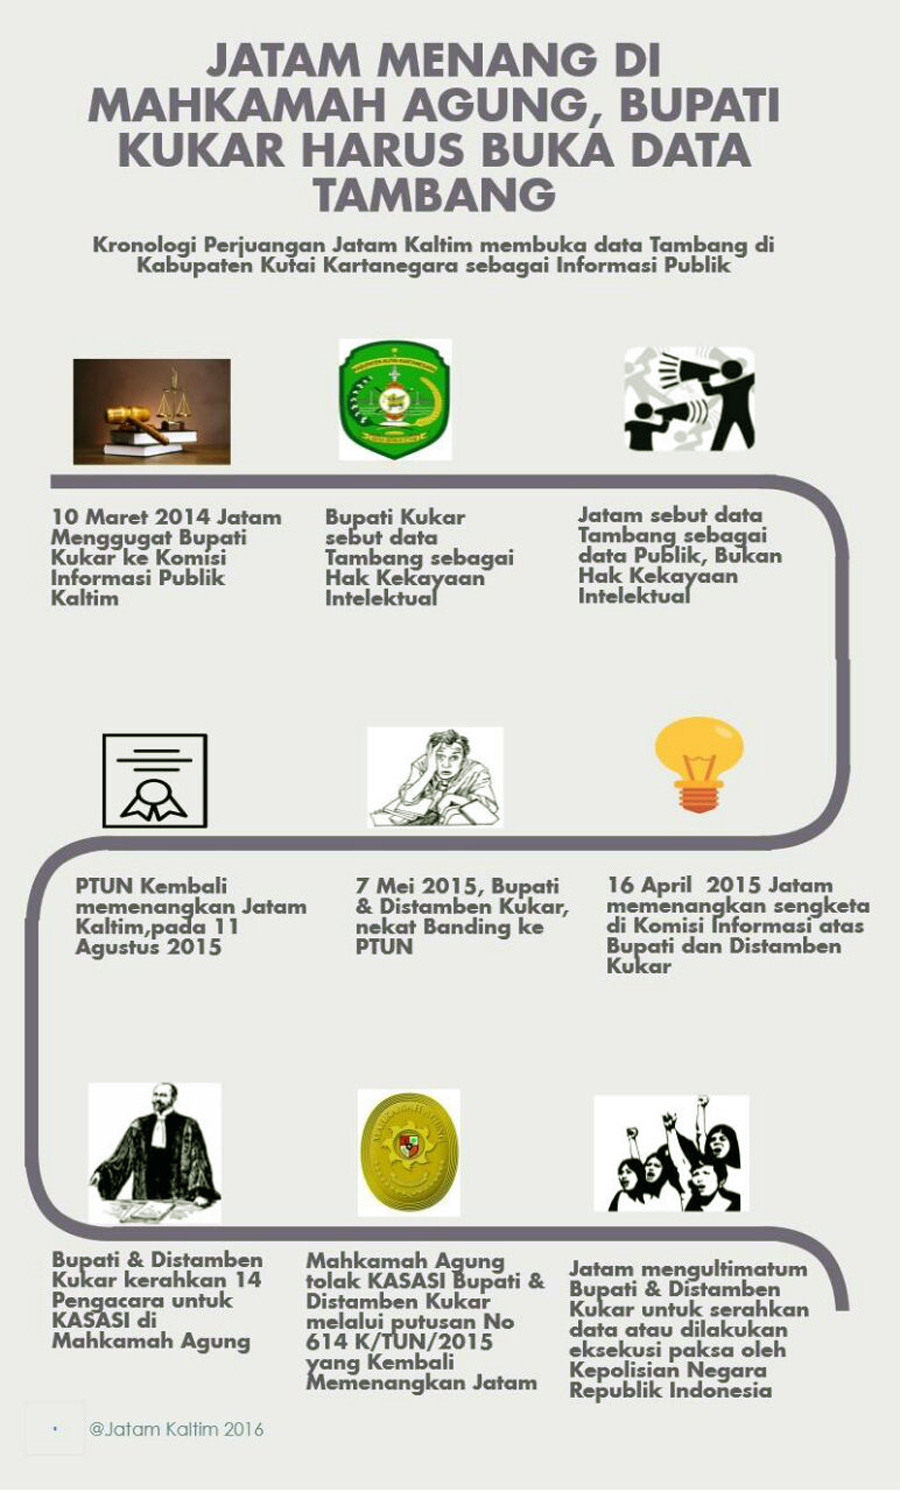 Infografis Jatam Kaltim menang di Mahkamah Agung. Sumber: Jatam Kaltim